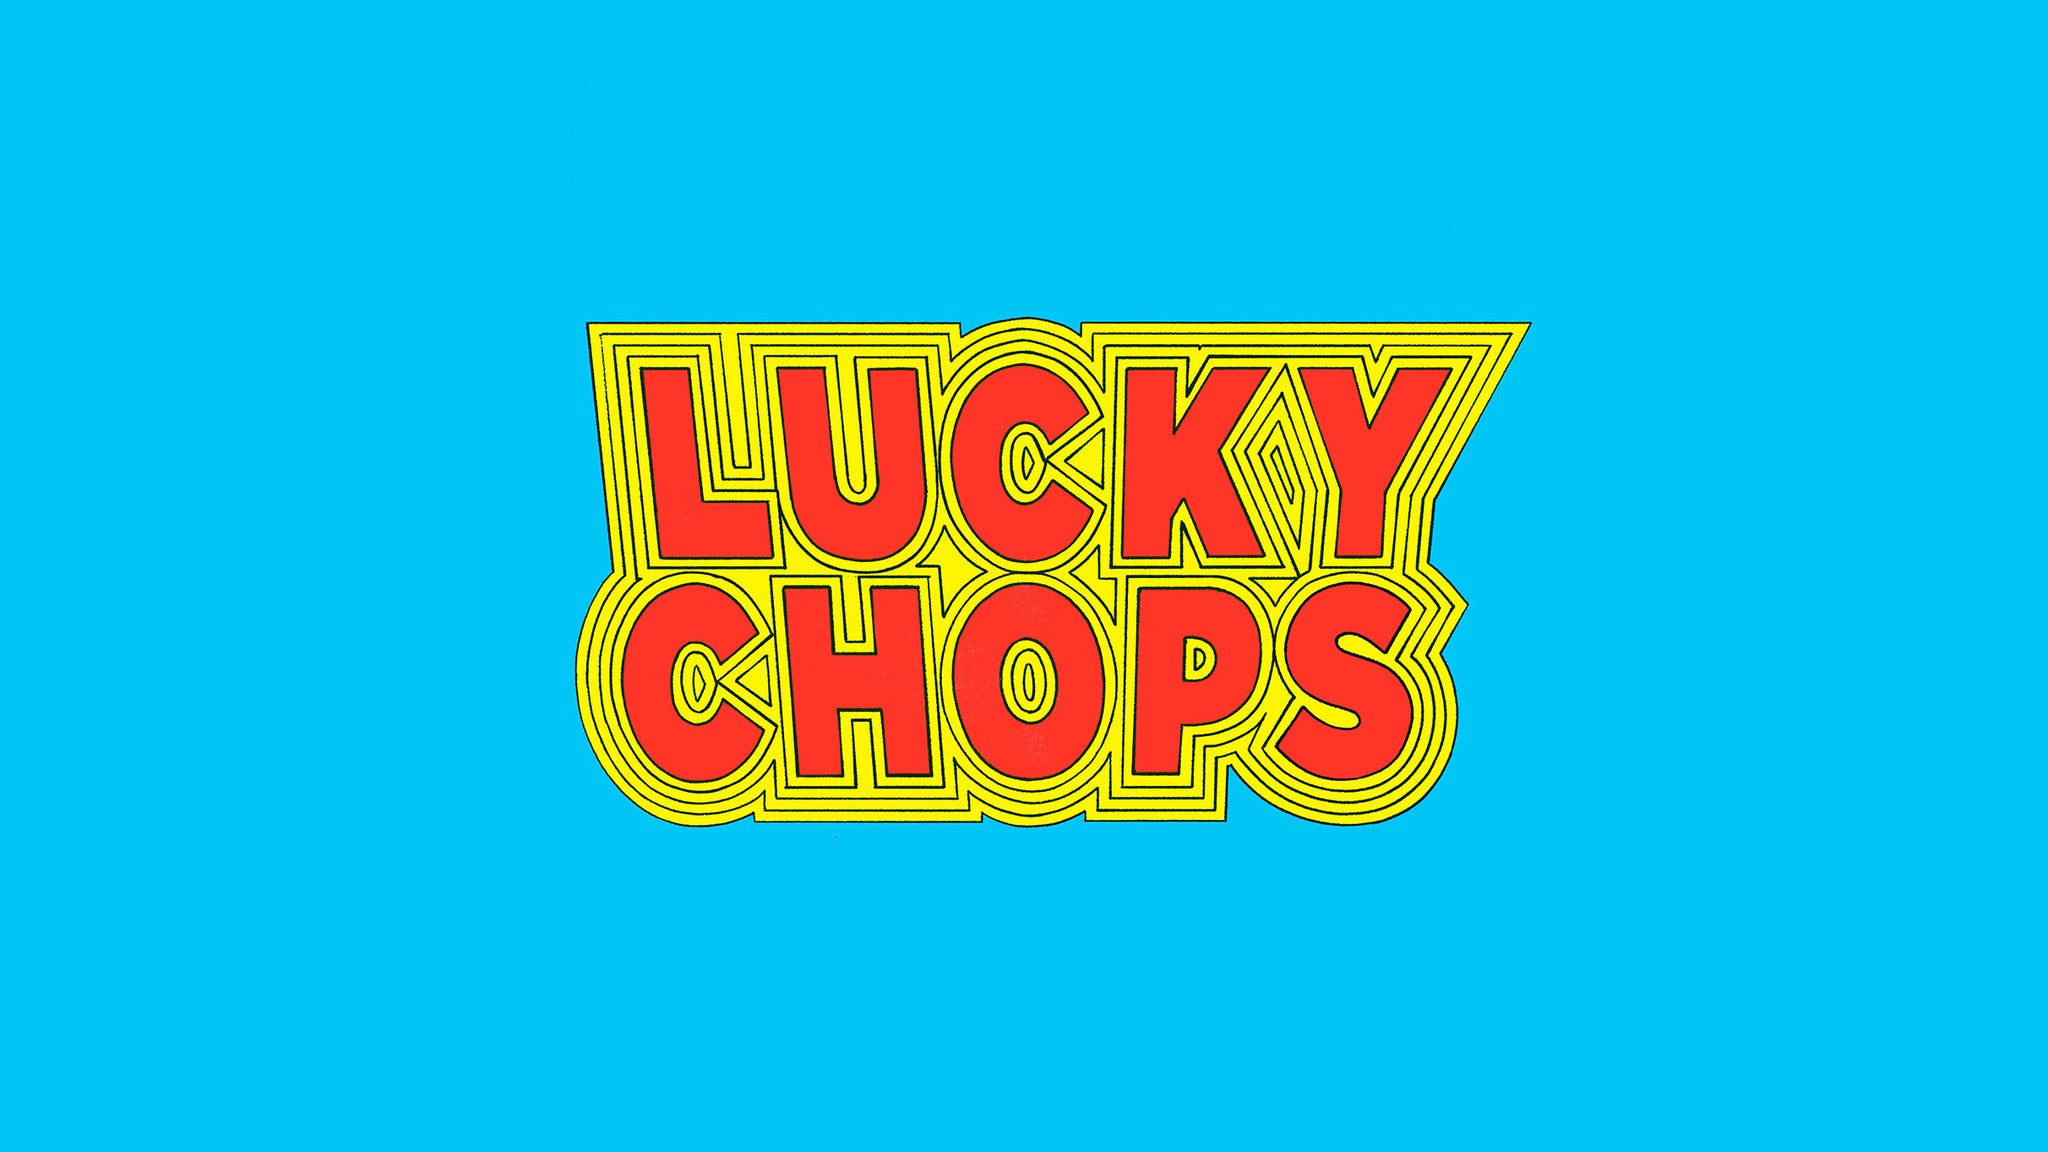 Lucky Chops